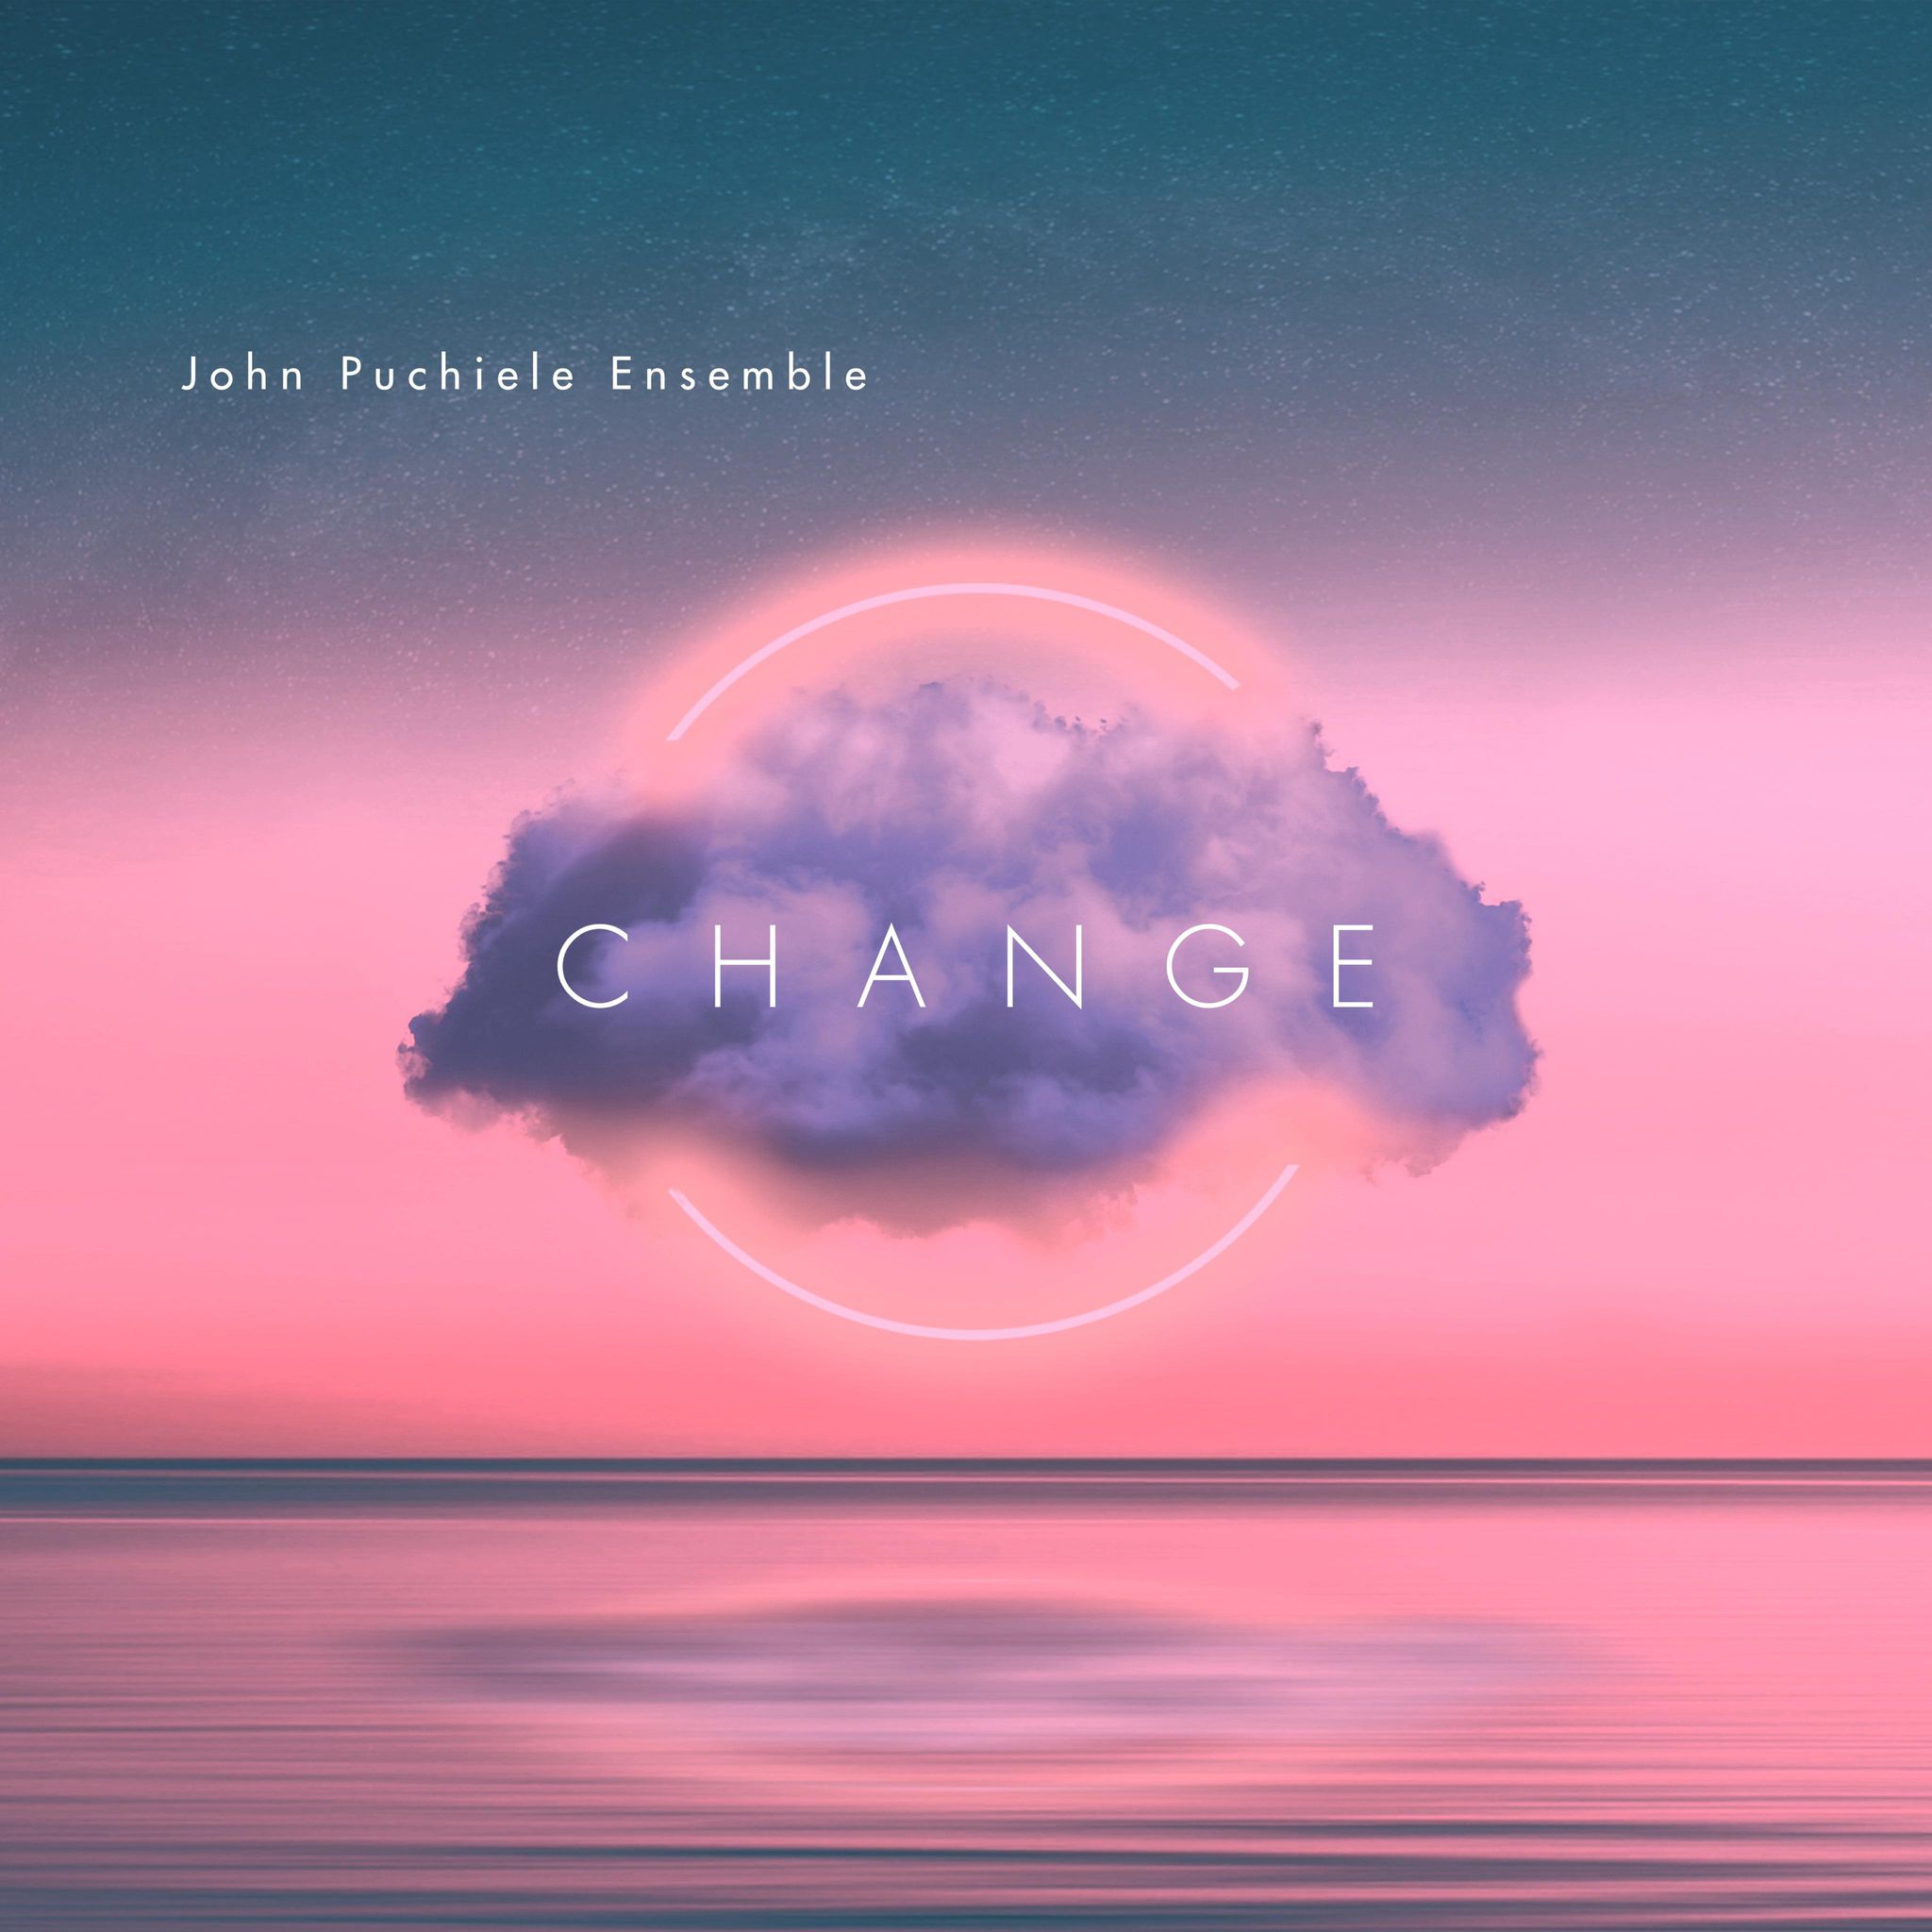 John Puchiele Ensemble — Change